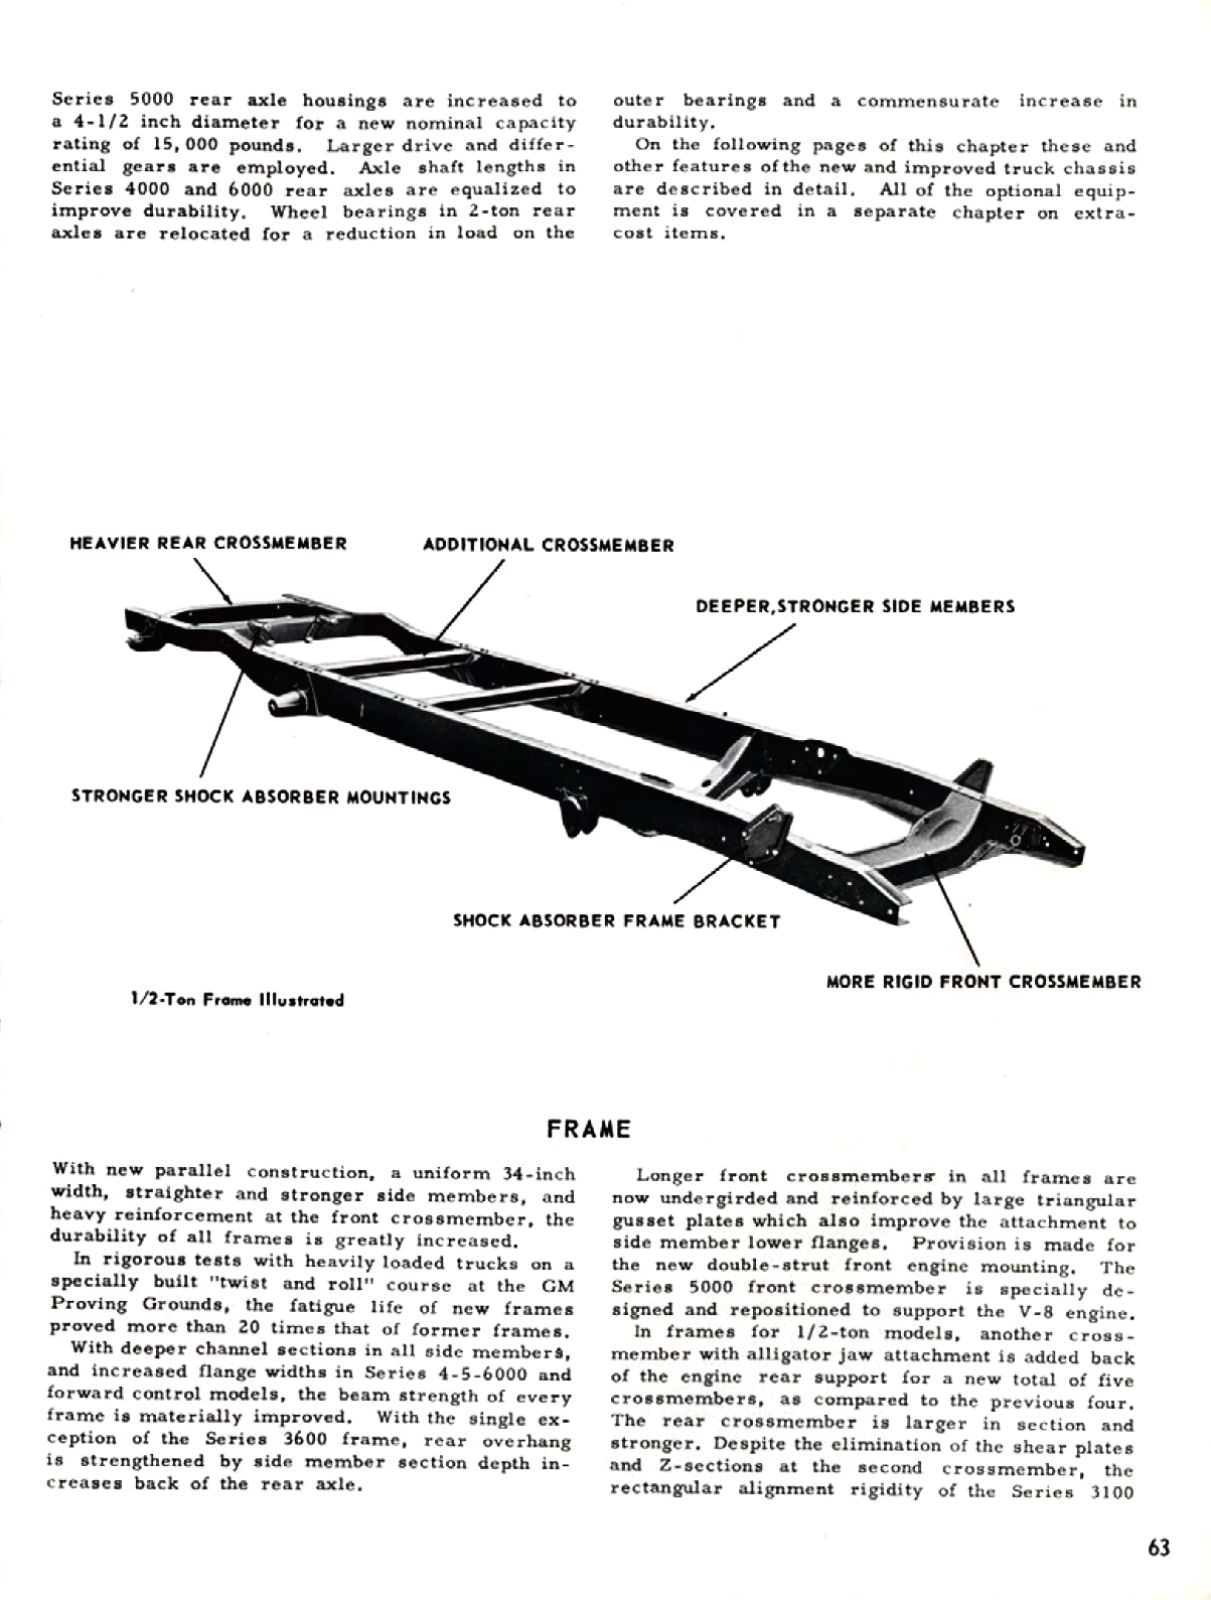 1955_Chevrolet_Truck_Engineering_Features-063